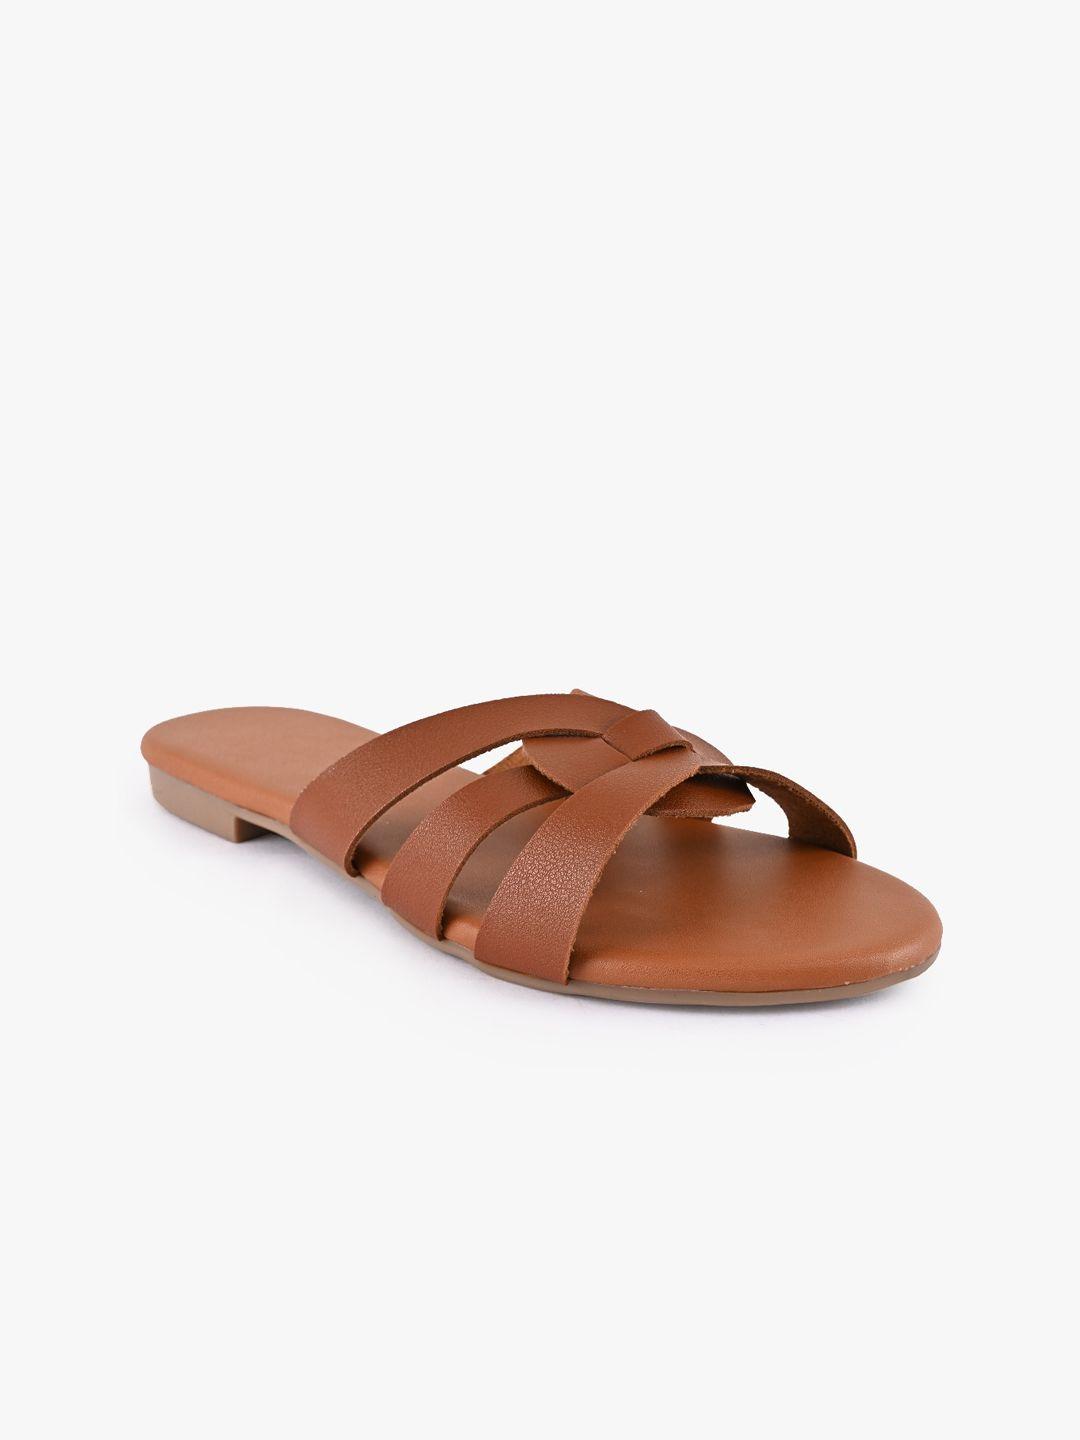 buckleup women tan brown textured open toe flats